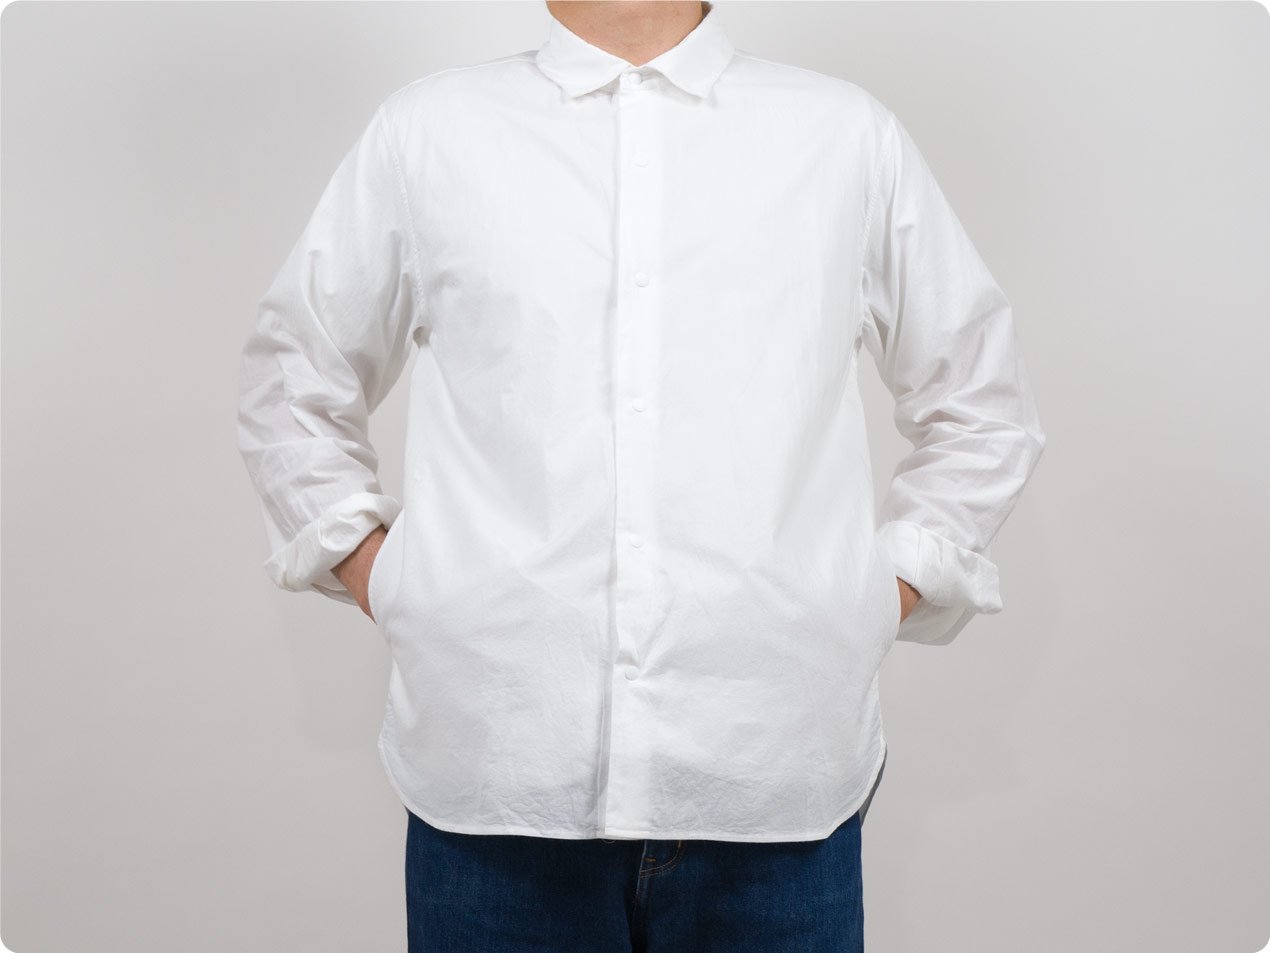 cotton100%colorYAECA コンフォートシャツ リラックス ロング WHITE 〔メンズ〕